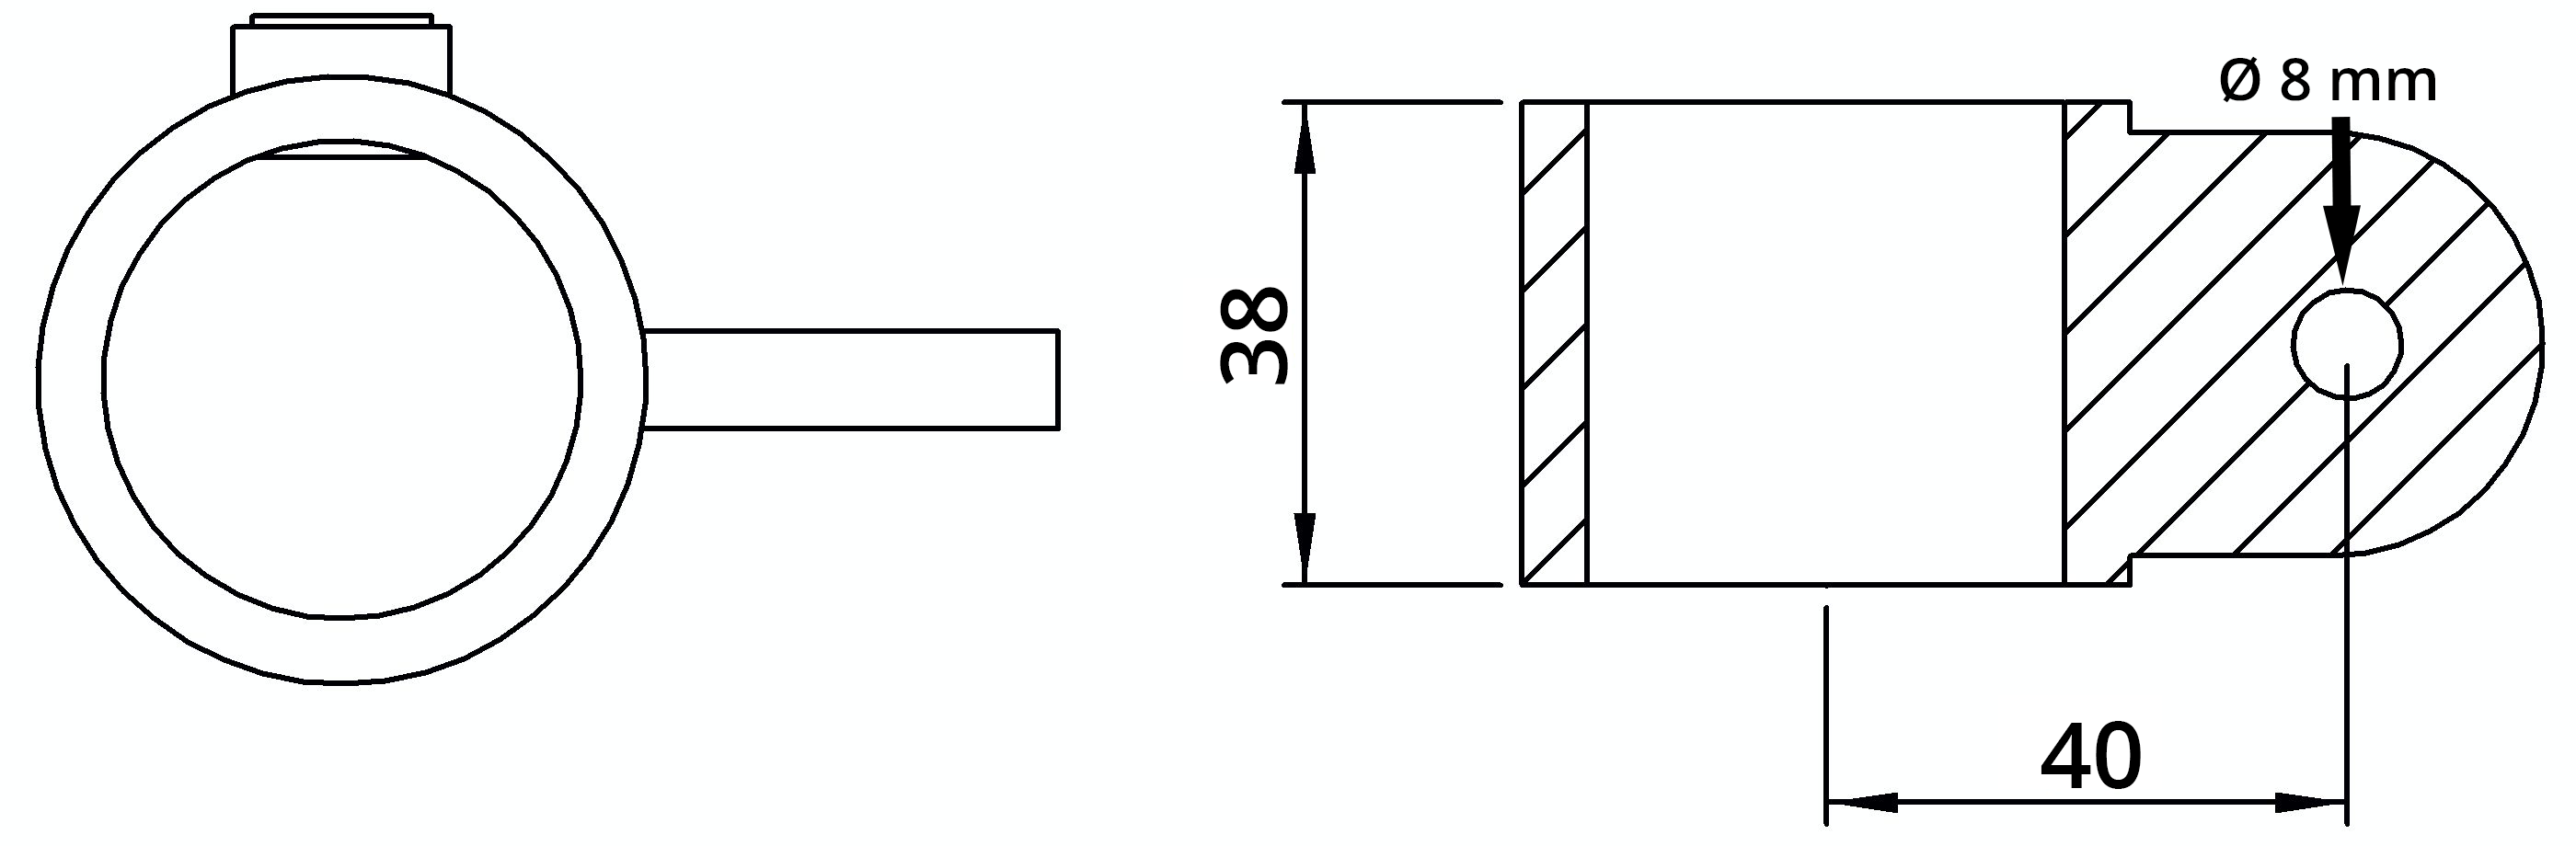 Rohrverbinder | Gelenkauge einfach | 173MA27 | 26,9 mm | 3/4" | Feuerverzinkt u. Elektrogalvanisiert